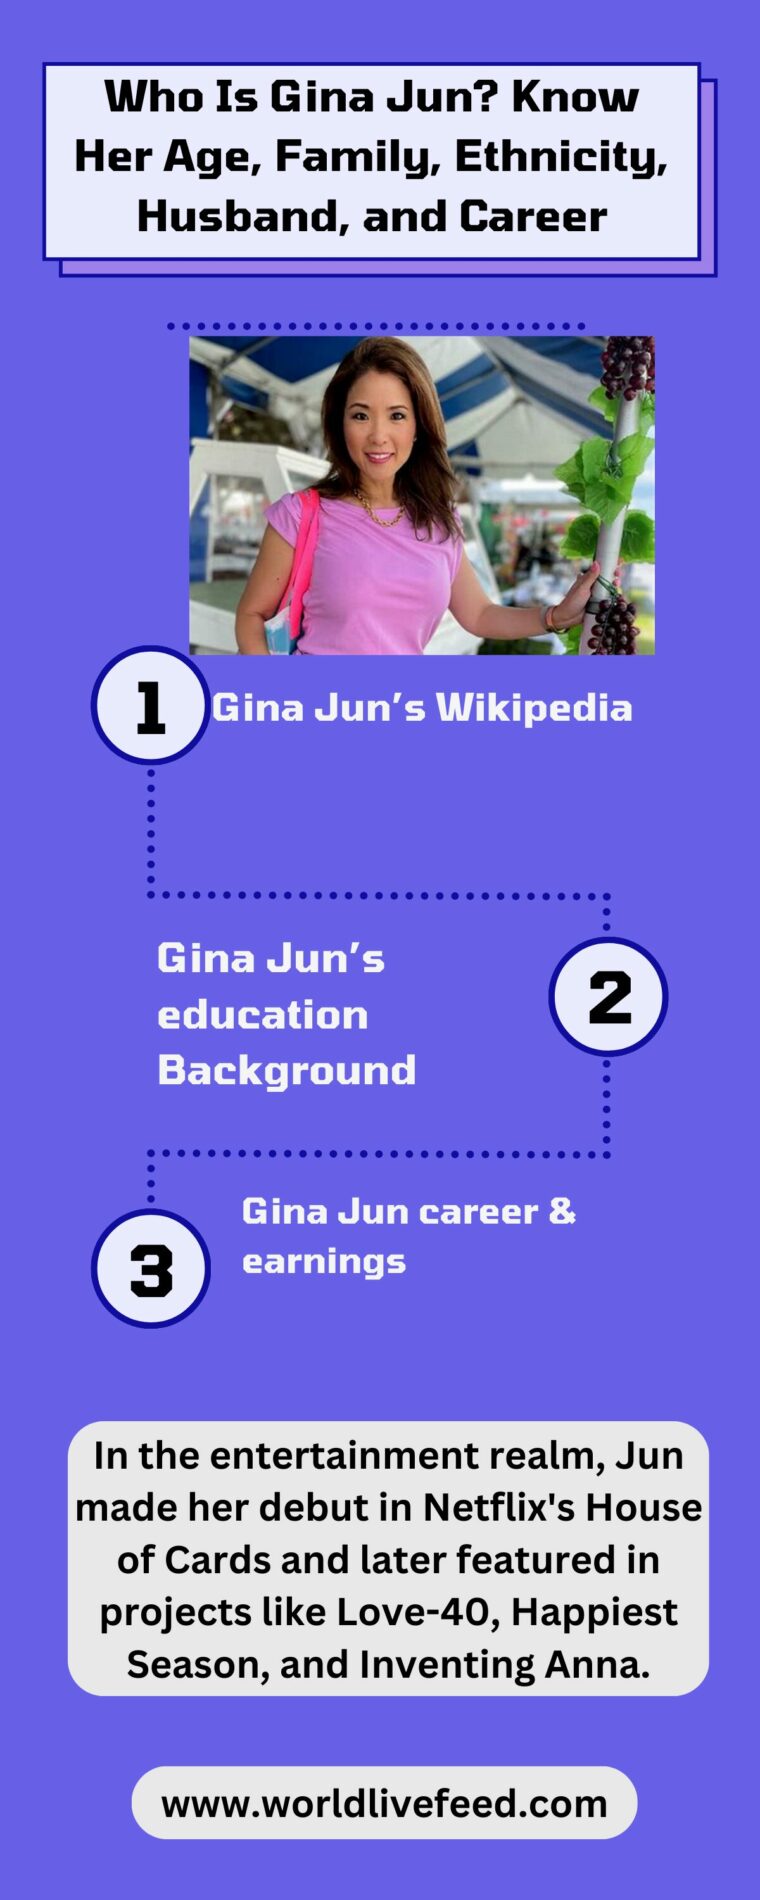 Who Is Gina Jun?